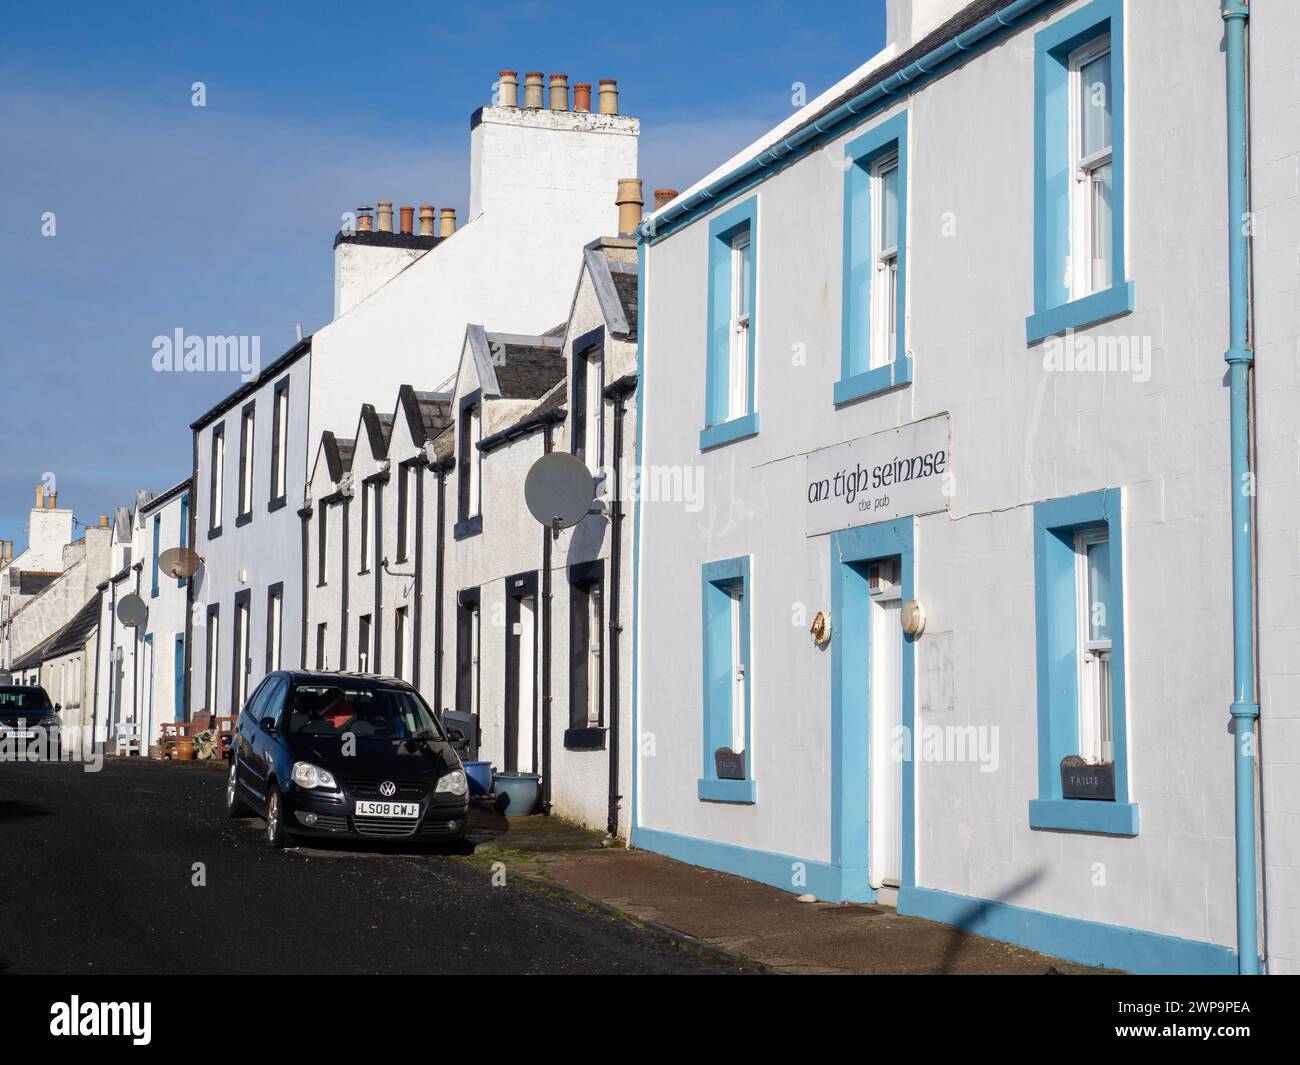 Portnahaven on Islay, Scotland, UK. Stock Photo